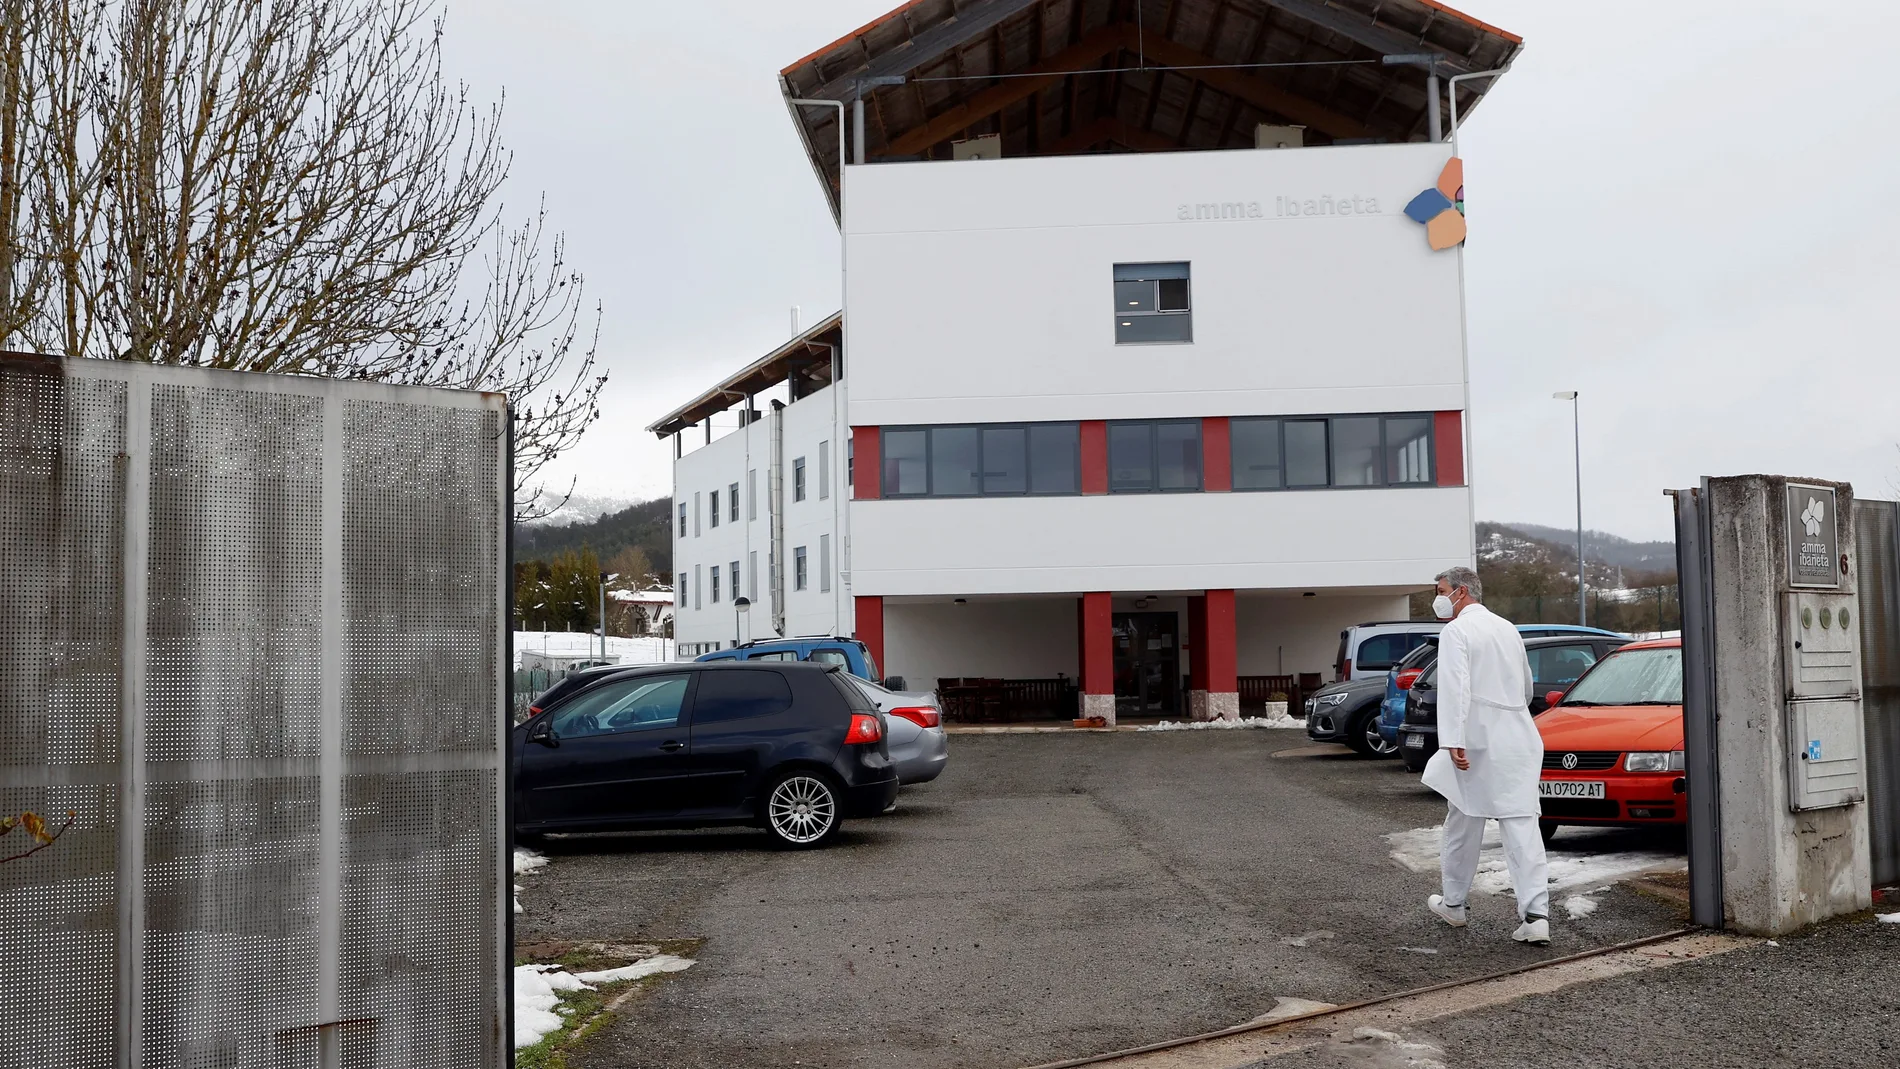 Exterior de la residencia Amavir Ibañeta, en Erro (Navarra) donde se ha producido un brote de covid-19 en 17 usuarios poco después de recibir la primera dosis de la vacuna y tras lograr salvar sin ningún contagio las dos olas anteriores de la pandemia.